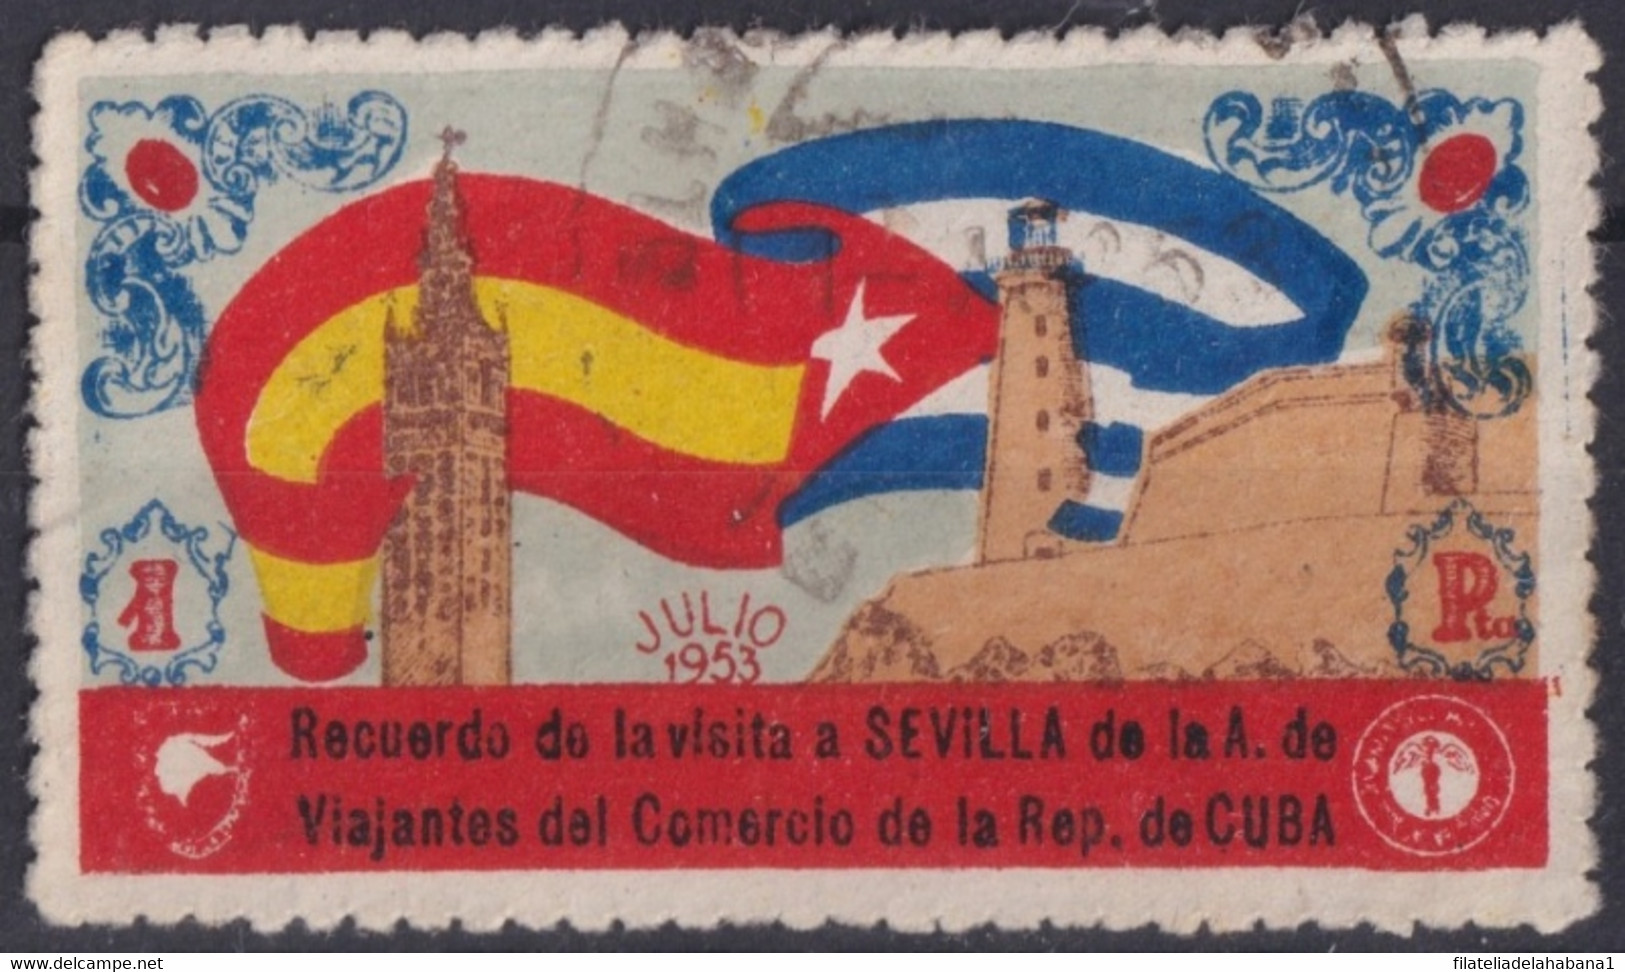 VI-517 CUBA REPUBLICA 1953 CINDERELLA VIAJANTES DEL COMERCIO VISTAN SEVILLA MORRO CASTLE. - Viñetas De Franqueo (Frama)